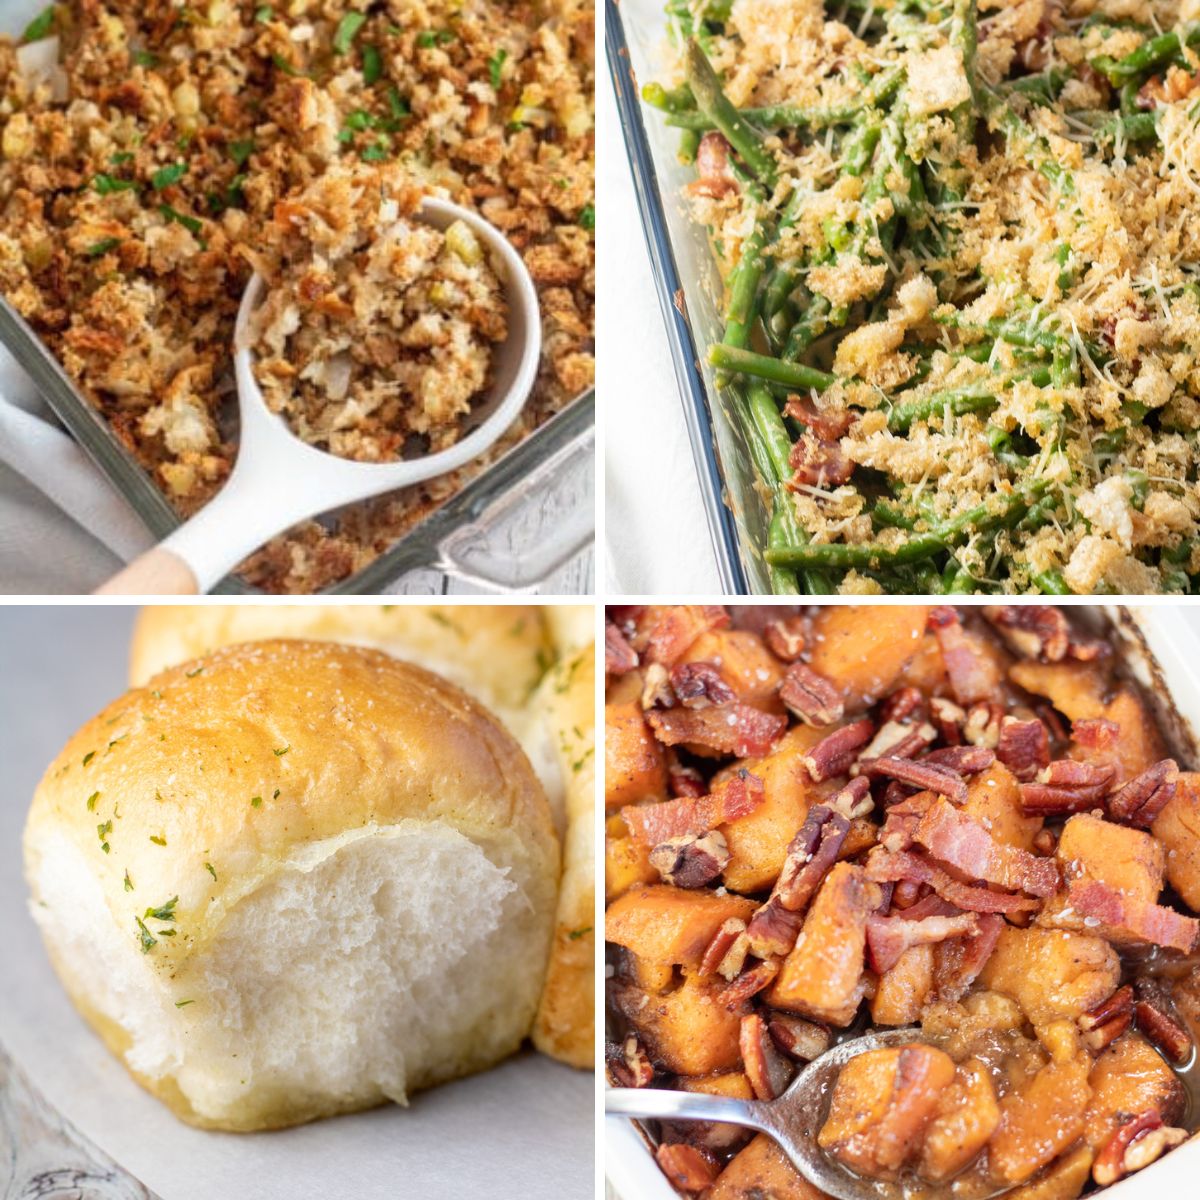 Gambar belah persegi menunjukkan resep berbeda yang dapat disajikan pada hari Thanksgiving dengan kalkun.